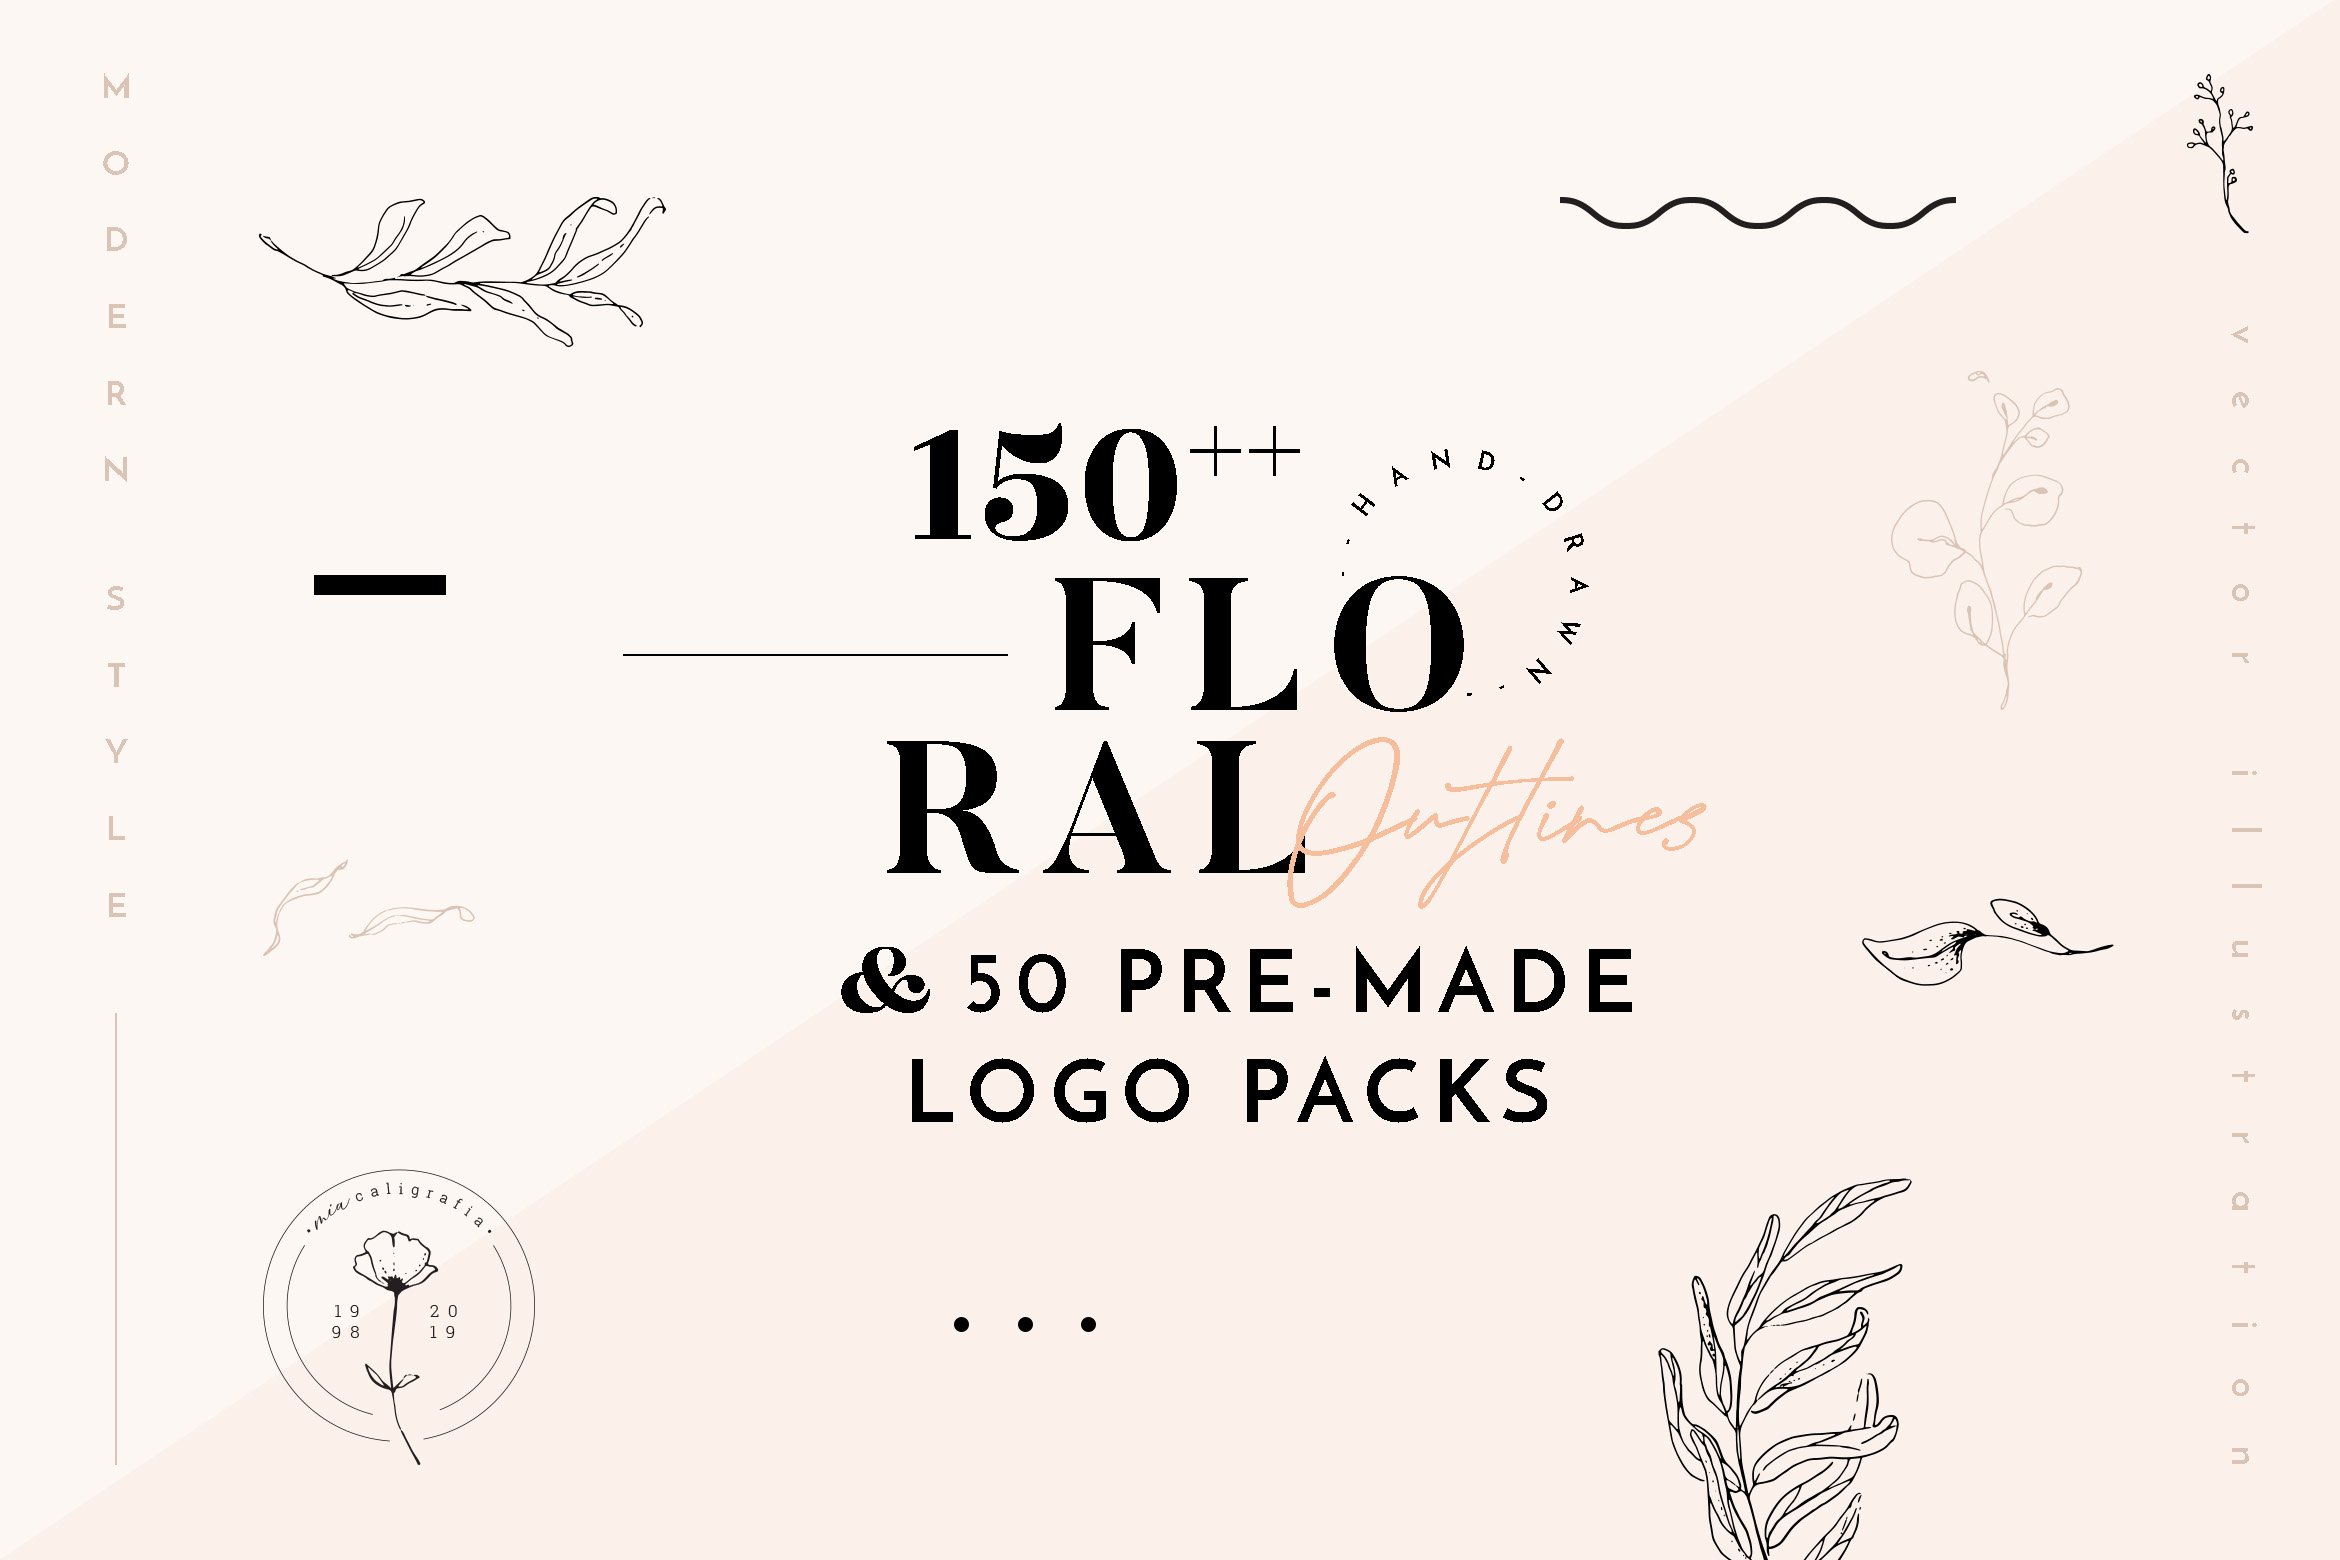 Floral Illustration & Logo Packs cover image.